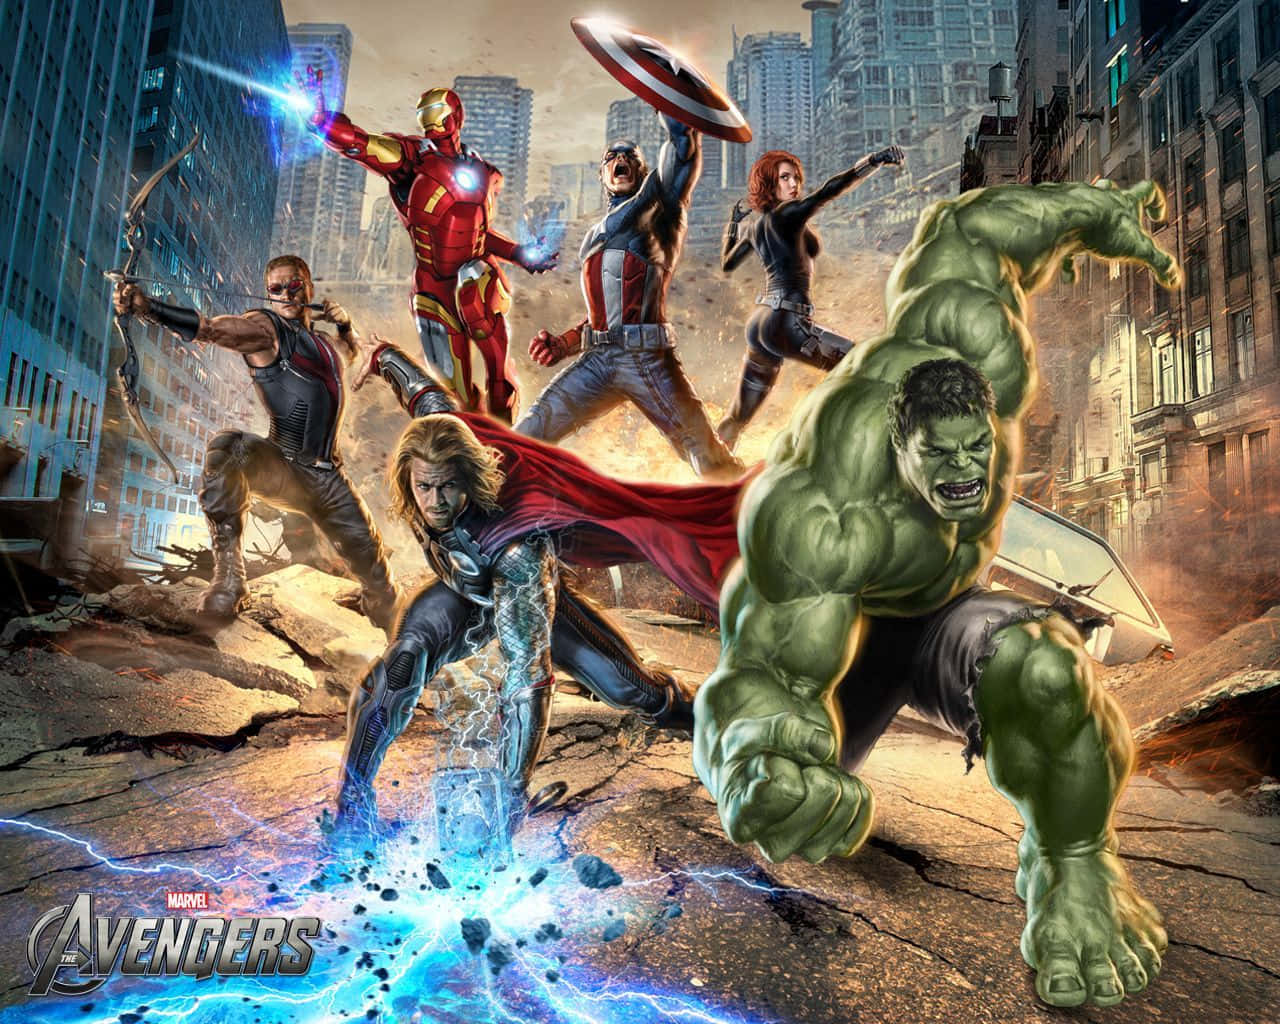 Marvelbakgrundsslaget Om New York 2012